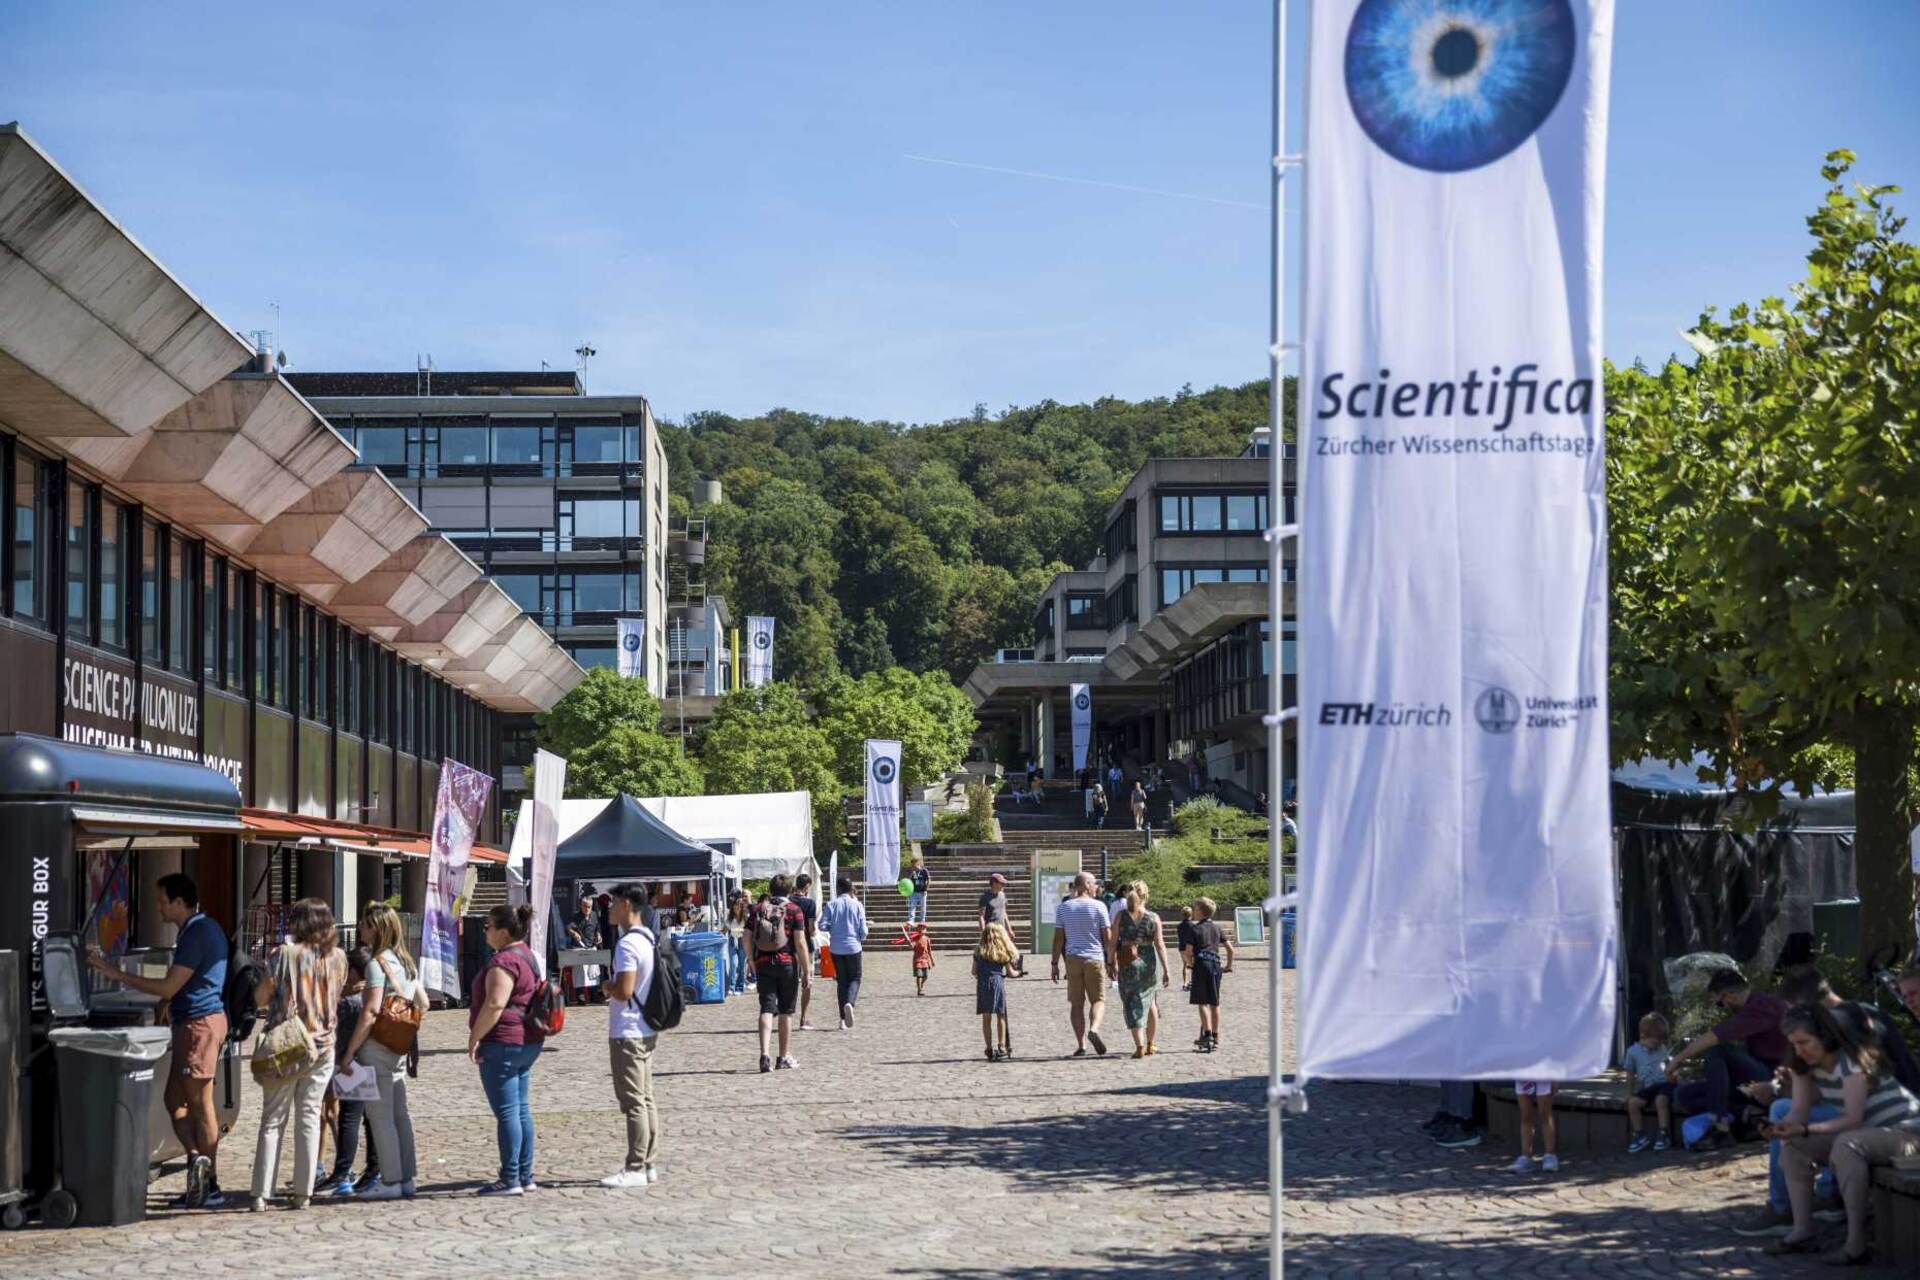 Scientific: Den åttonde upplagan av Schweiz största vetenskapsfestival ägde rum i Zürich den 2 och 3 september 2023